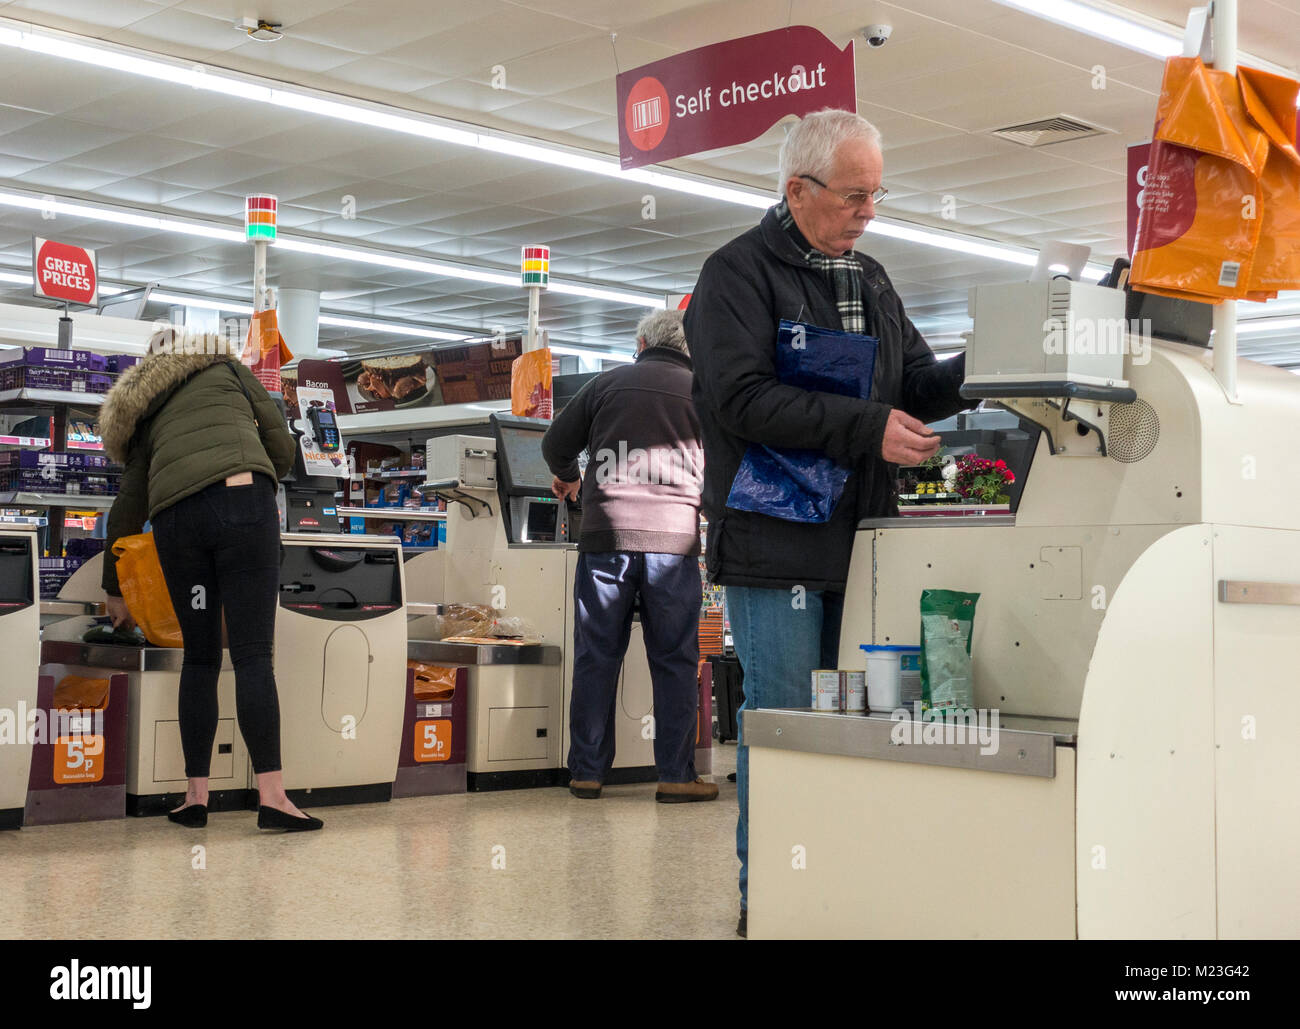 Drei Kunden zahlen für ihre Einkaufsmöglichkeiten im Self Checkout Bereich von Sainsbury's Supermarkt in Bourne, Lincolnshire, England, UK. Stockfoto